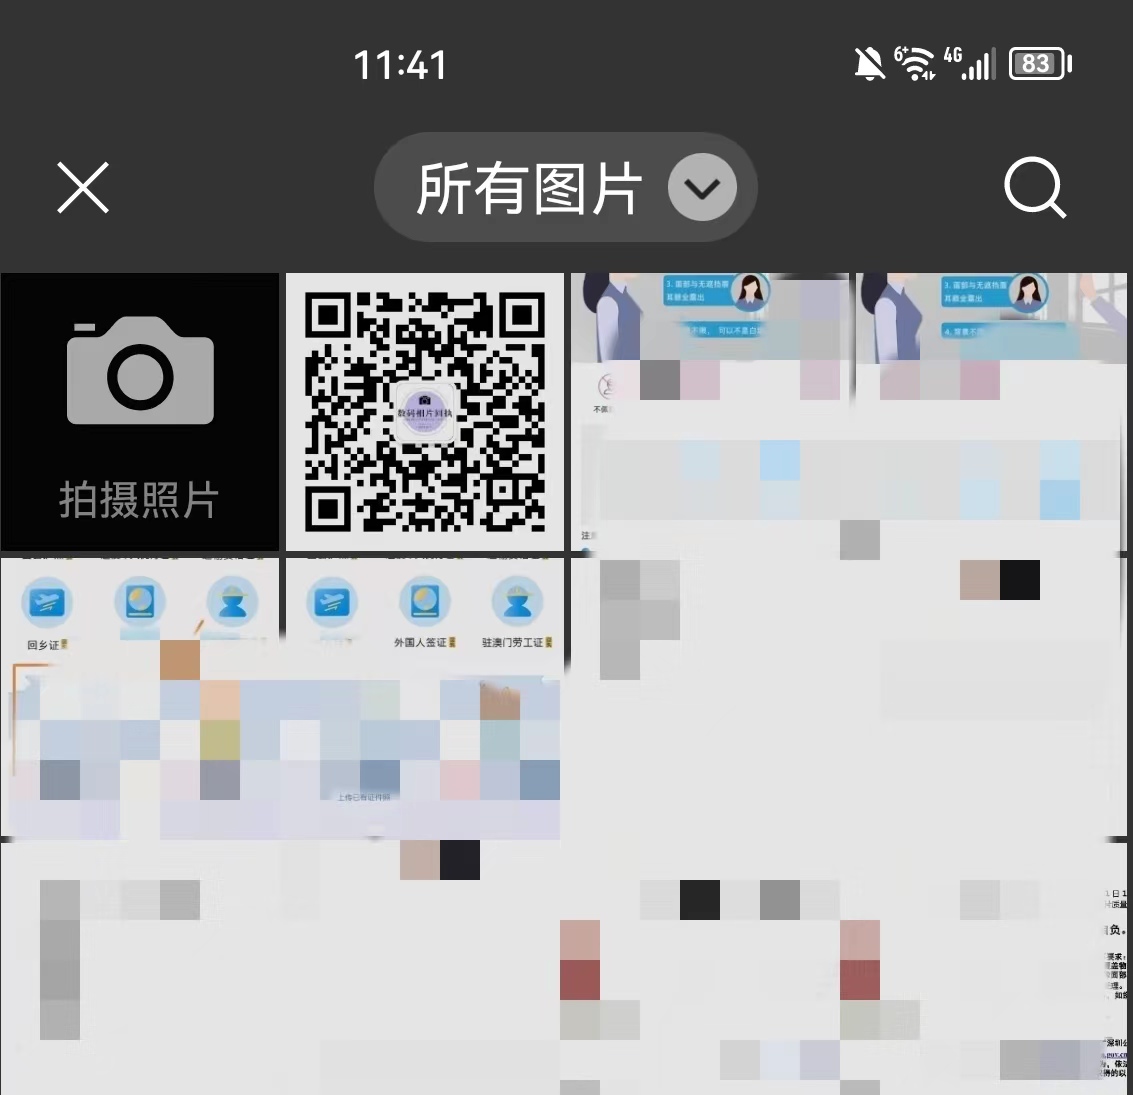 深圳身份证照片回执可以自己弄吗？